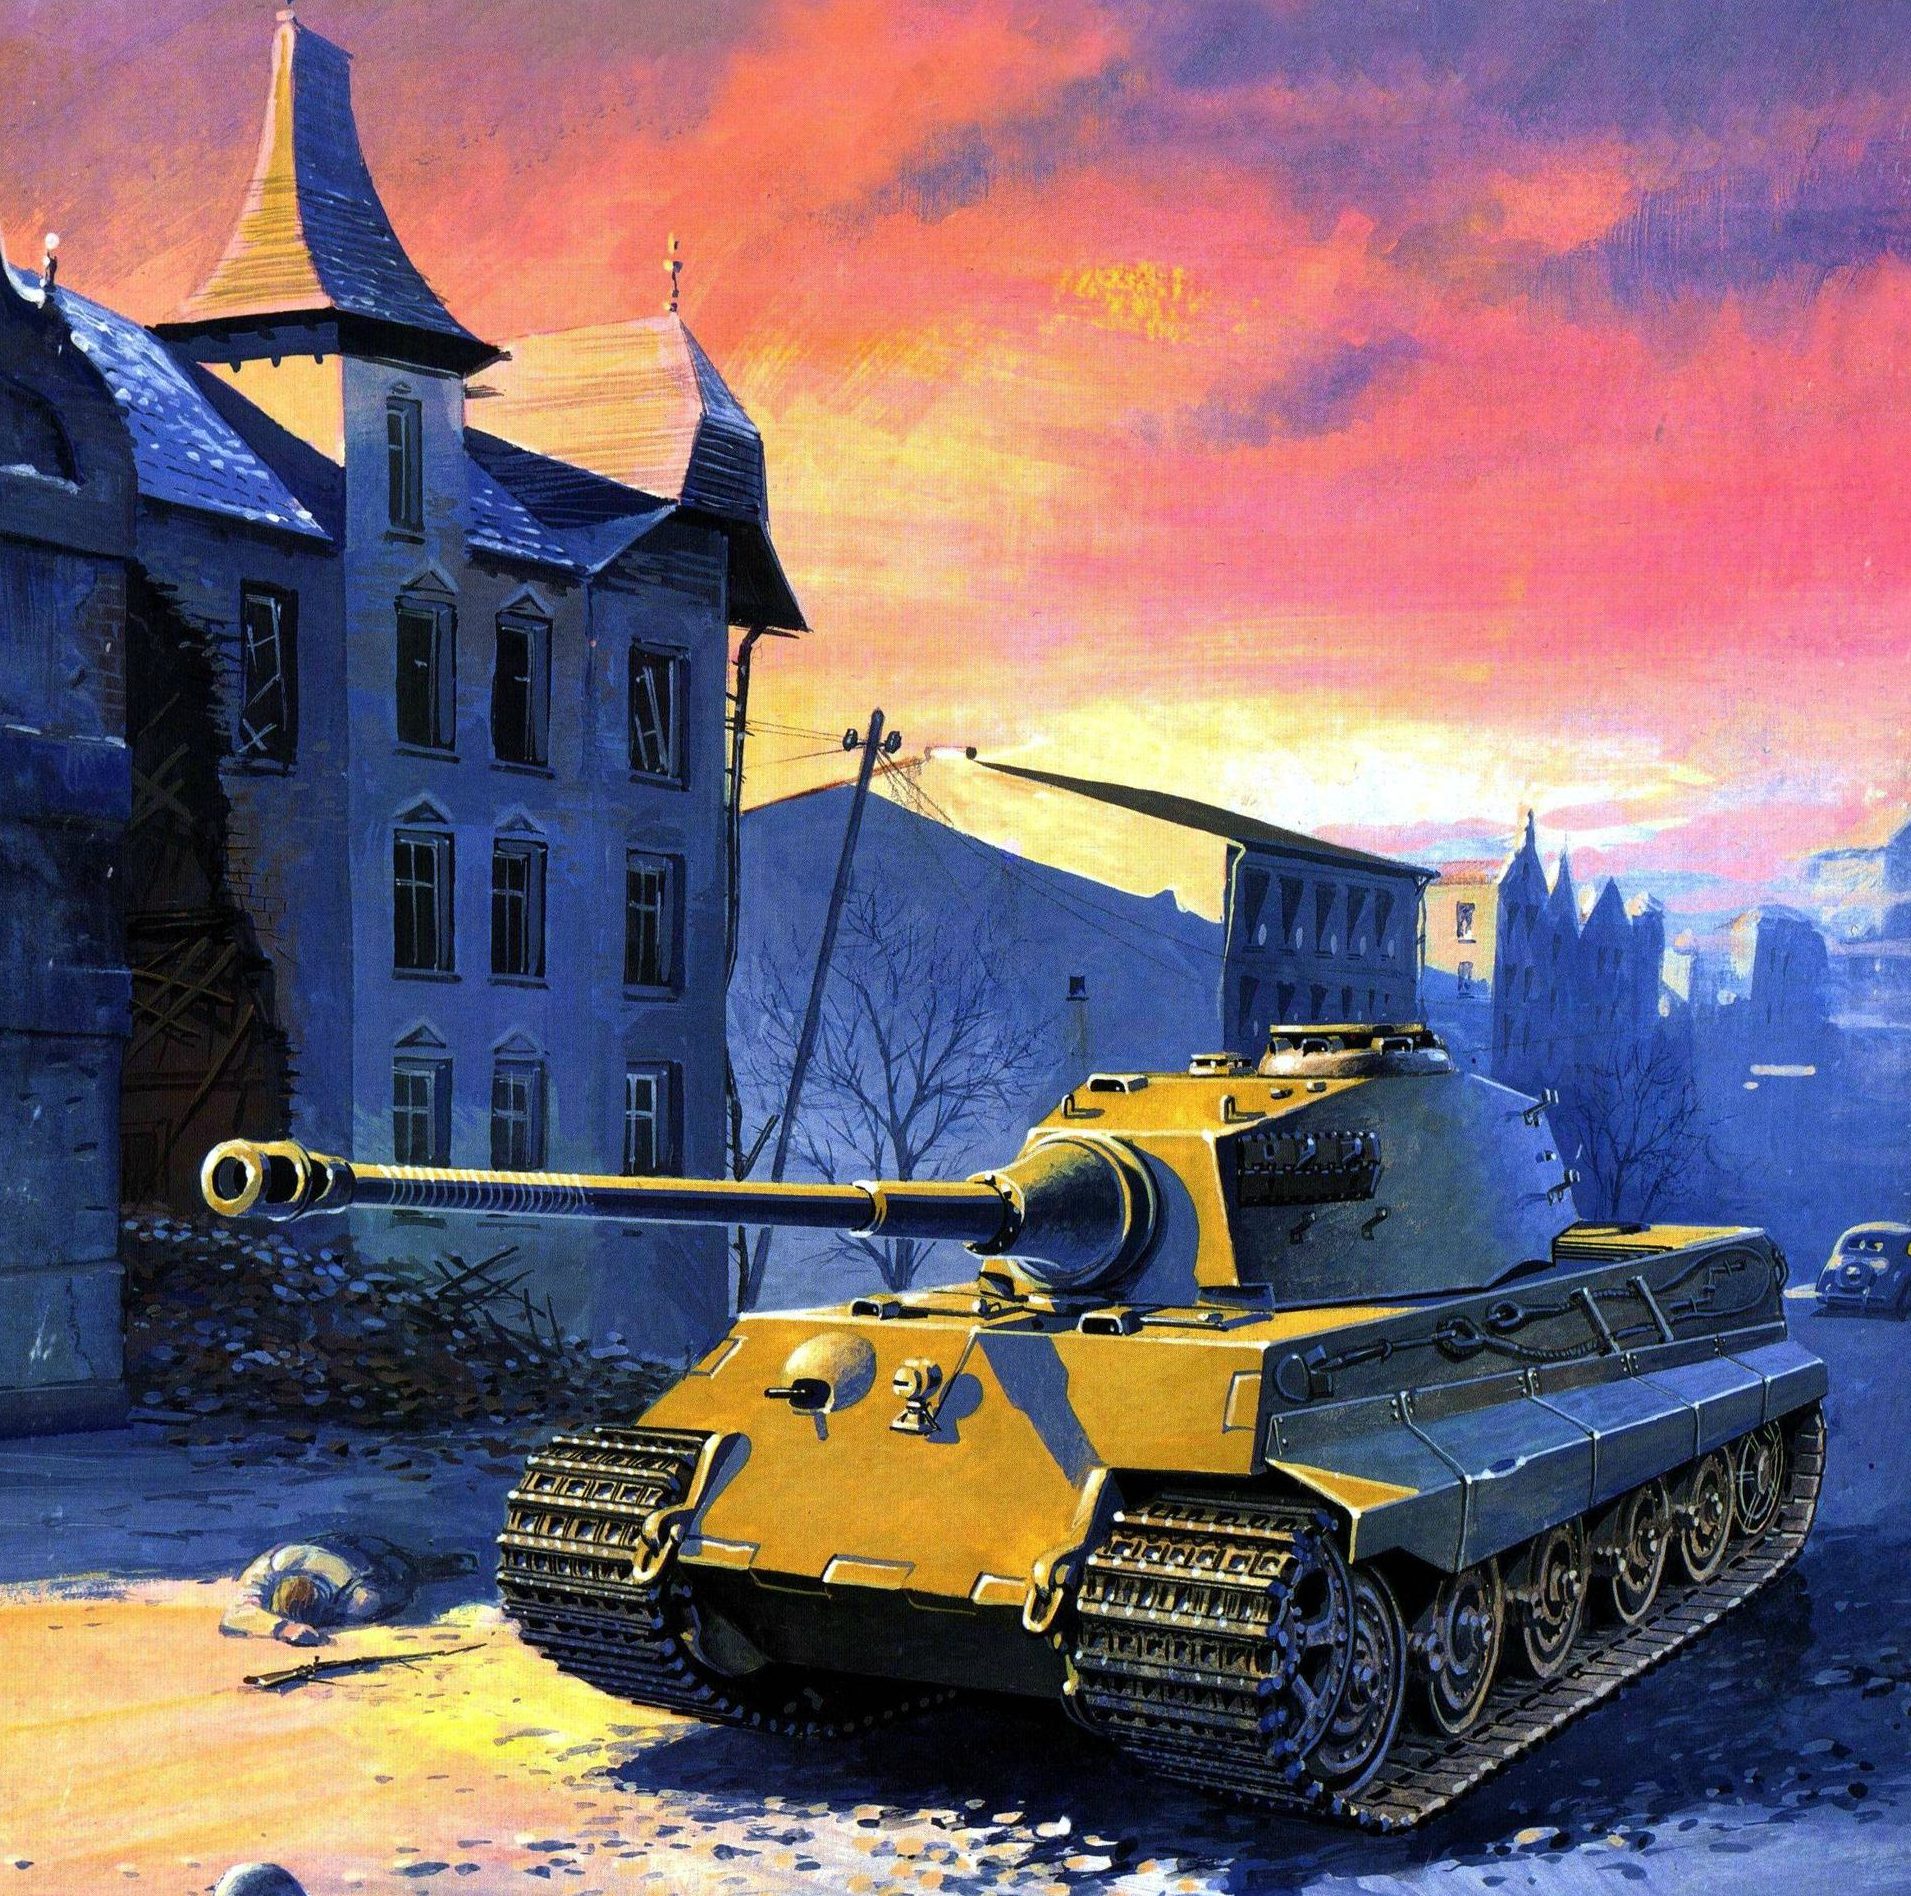 Wrobel Jaroslaw. Танк Tiger II.